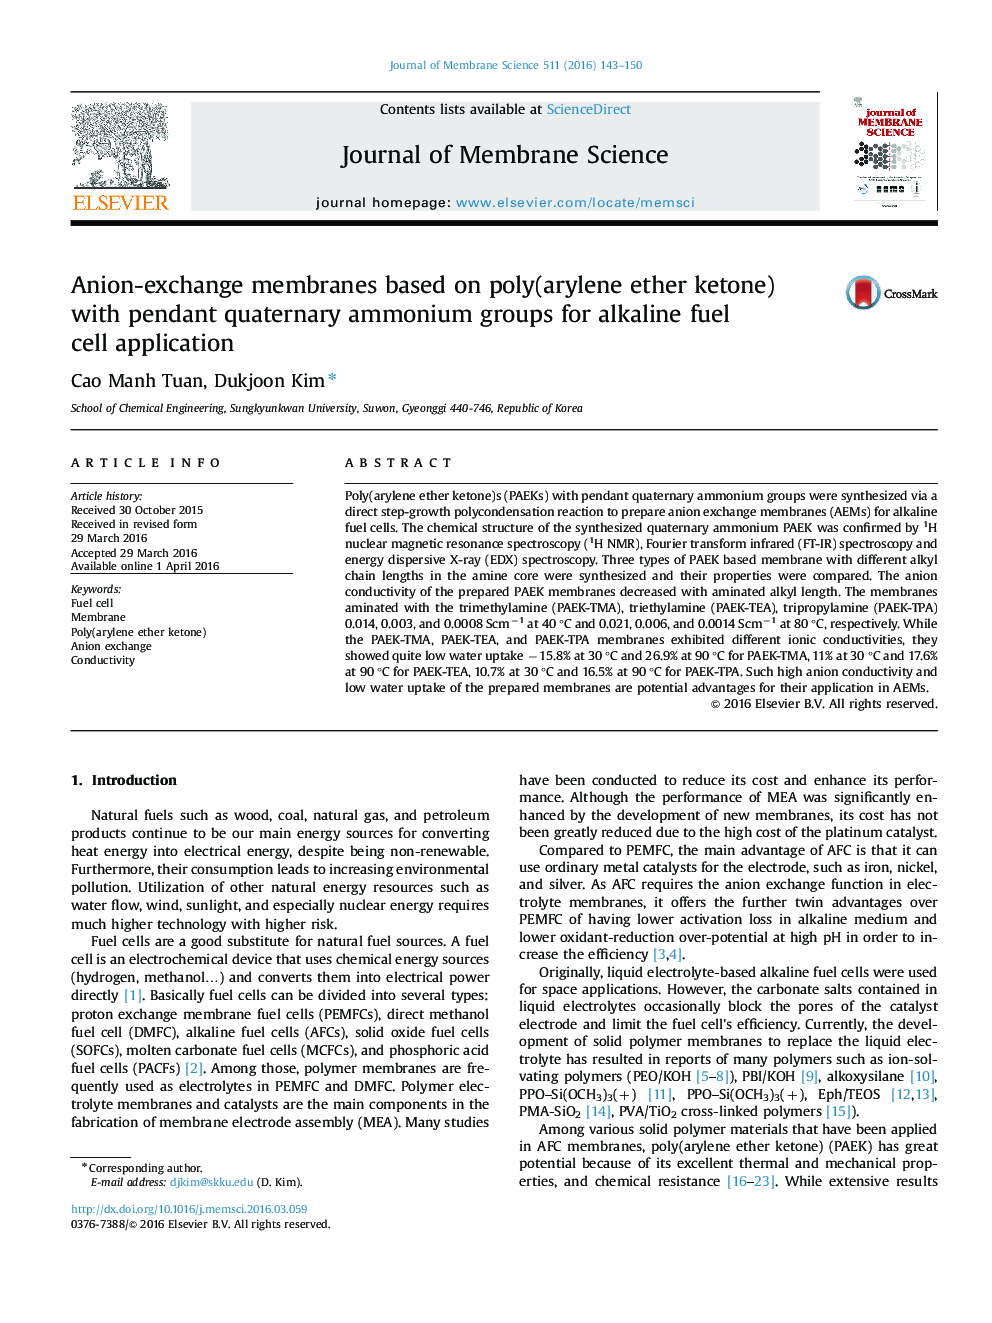 غشاهای مبدل آنیونی مبتنی بر پلی (آرییلن اتر کتون) با گروه های آمونیوم کواترنری آویز برای کاربرد سلول های سوختی قلیایی 